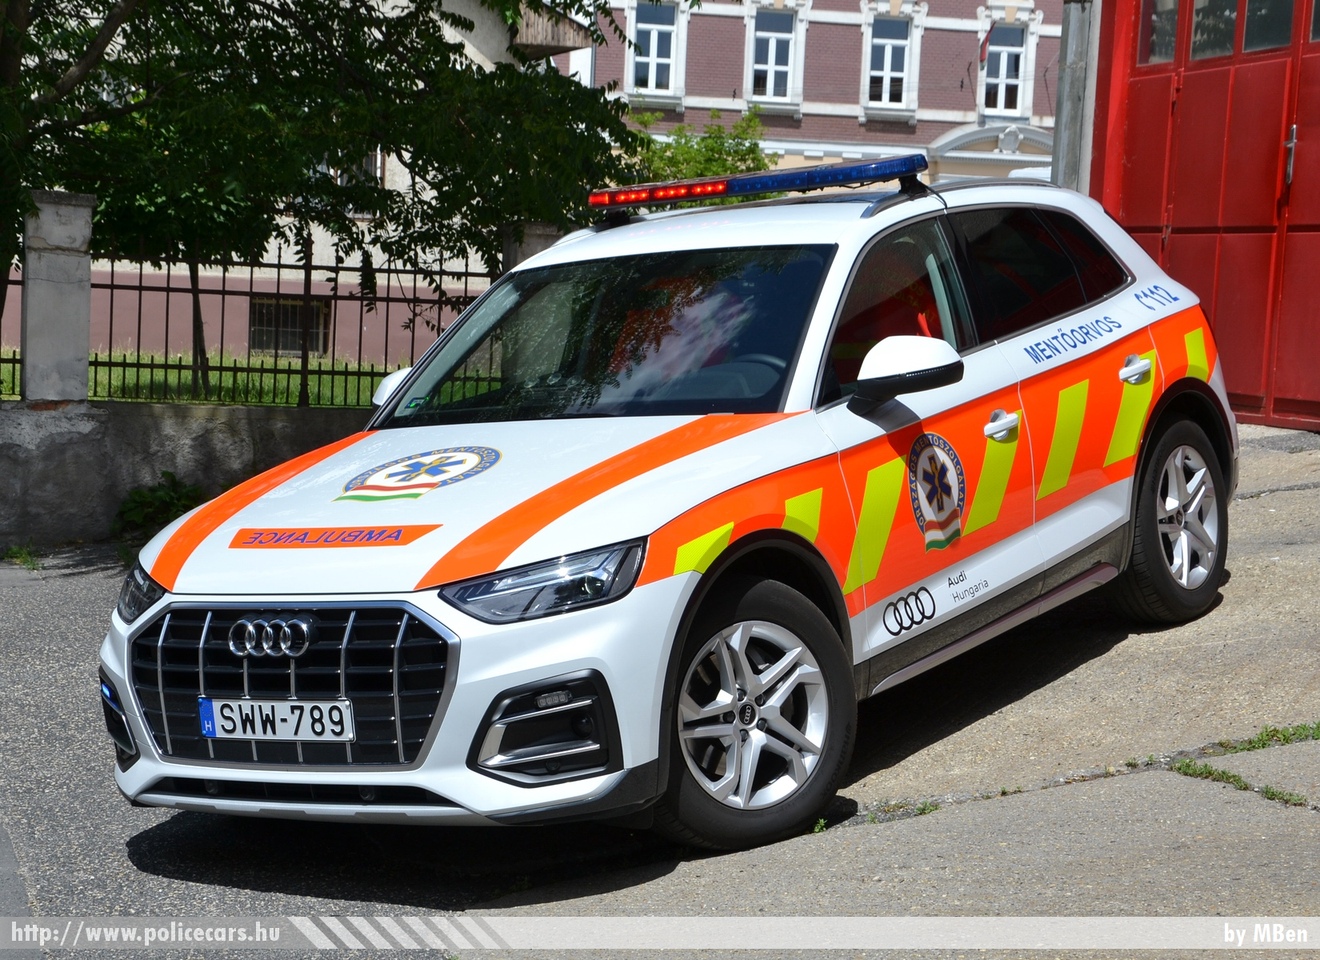 Audi Q5, Országos Mentõszolgálat, mentõorvosi kocsi, fotó: MBen
Keywords: mentő magyar Magyarország mentőautó ambulance Hungary hungarian OMSZ SWW-789